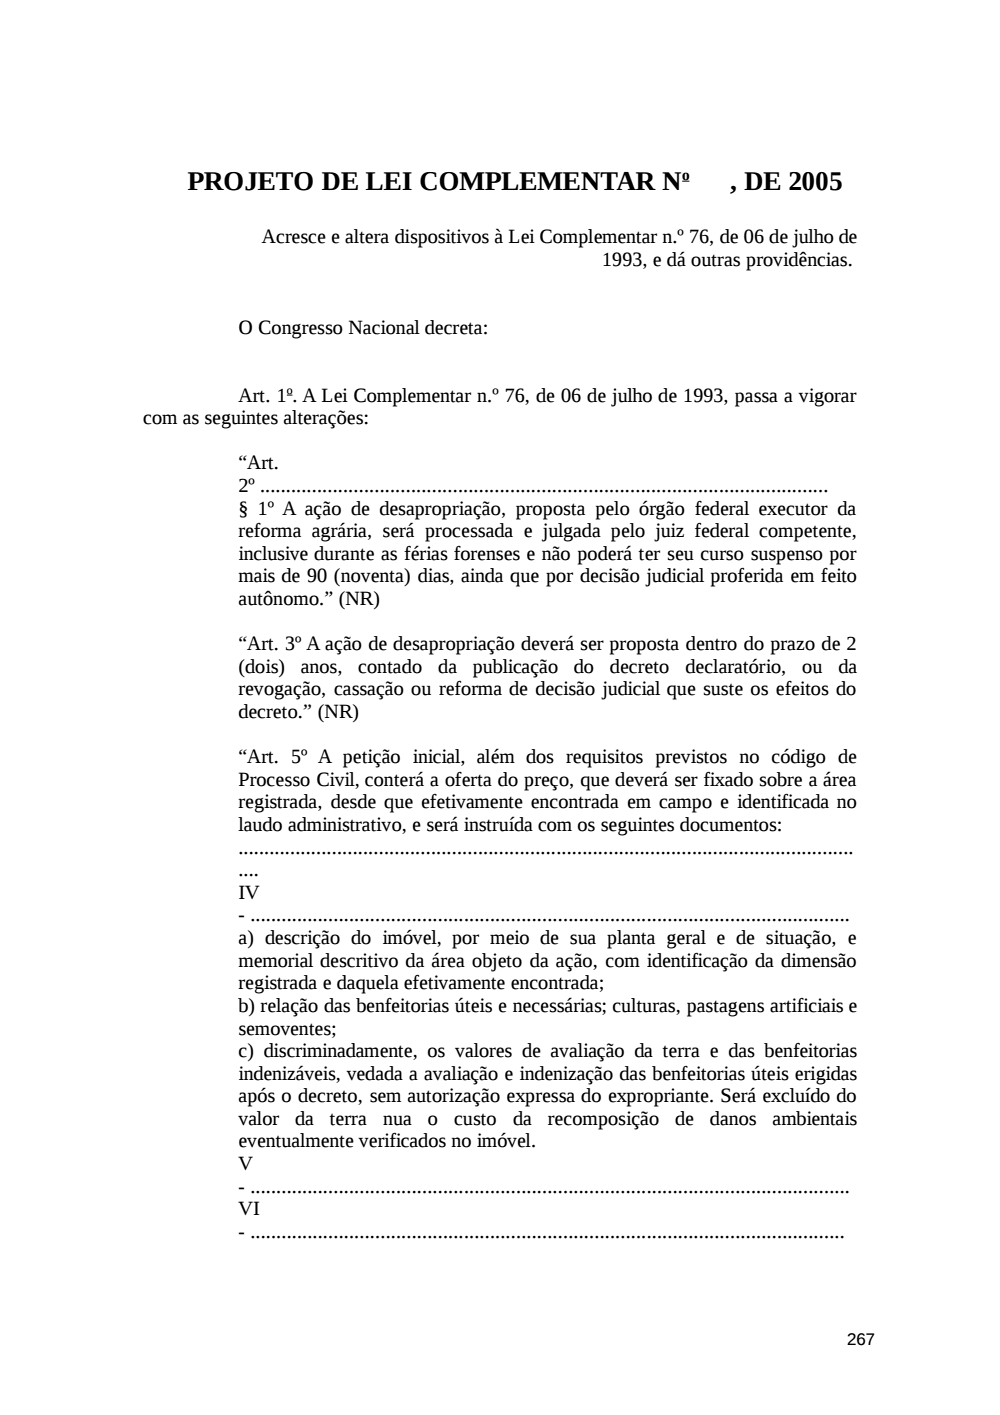 Page 267 from Relatório final da comissão